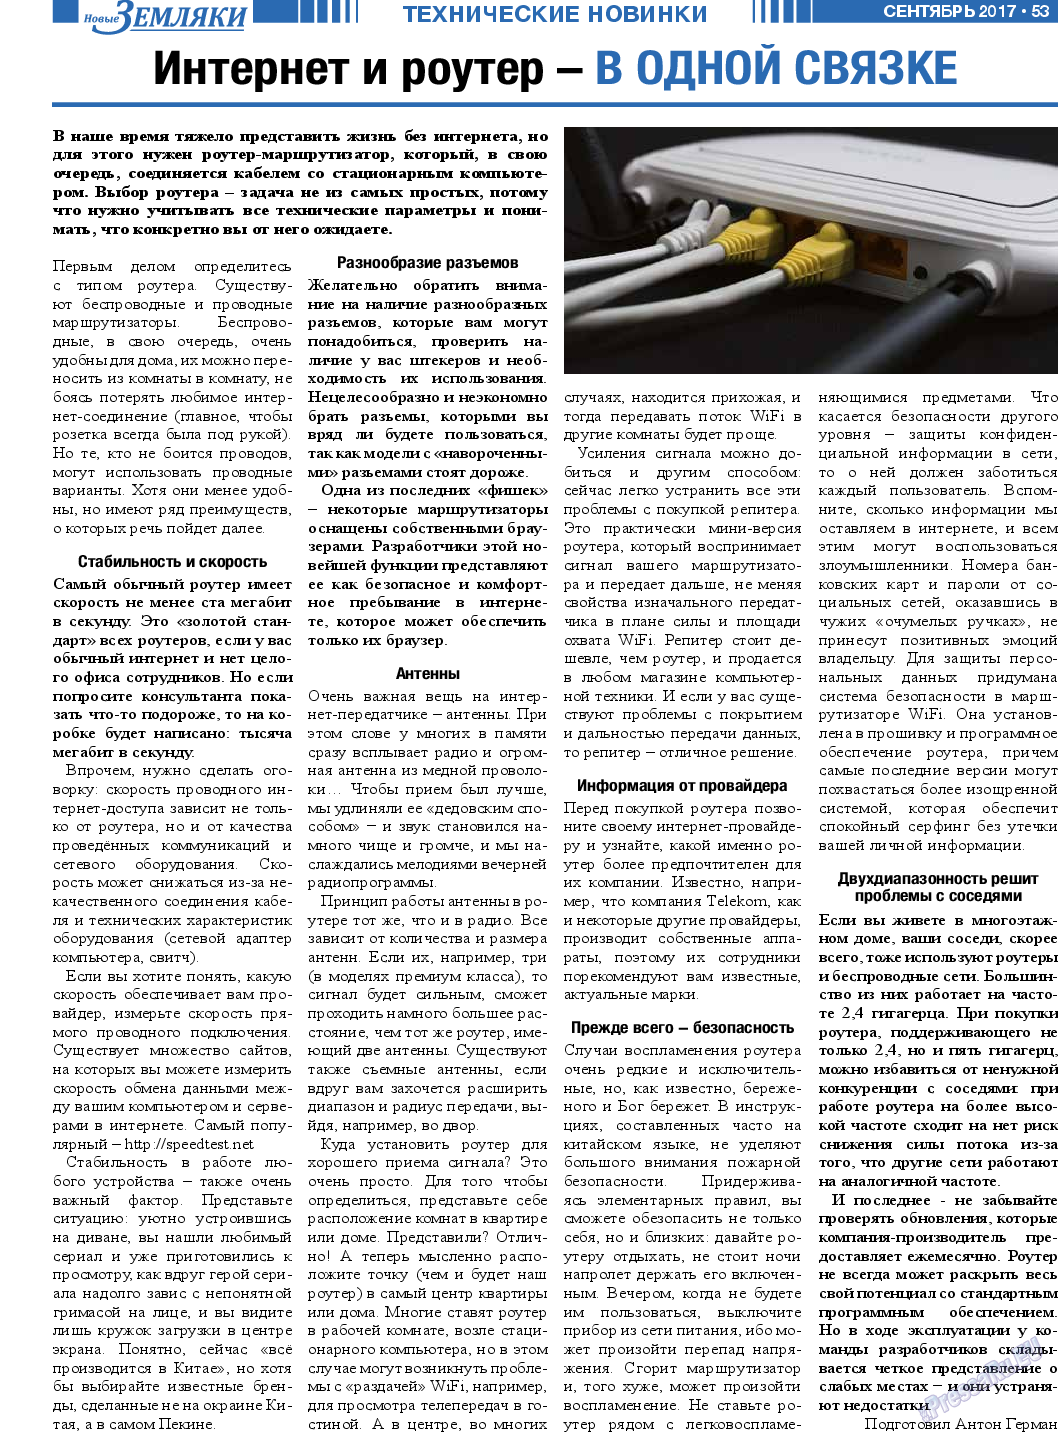 Новые Земляки (газета). 2017 год, номер 9, стр. 53